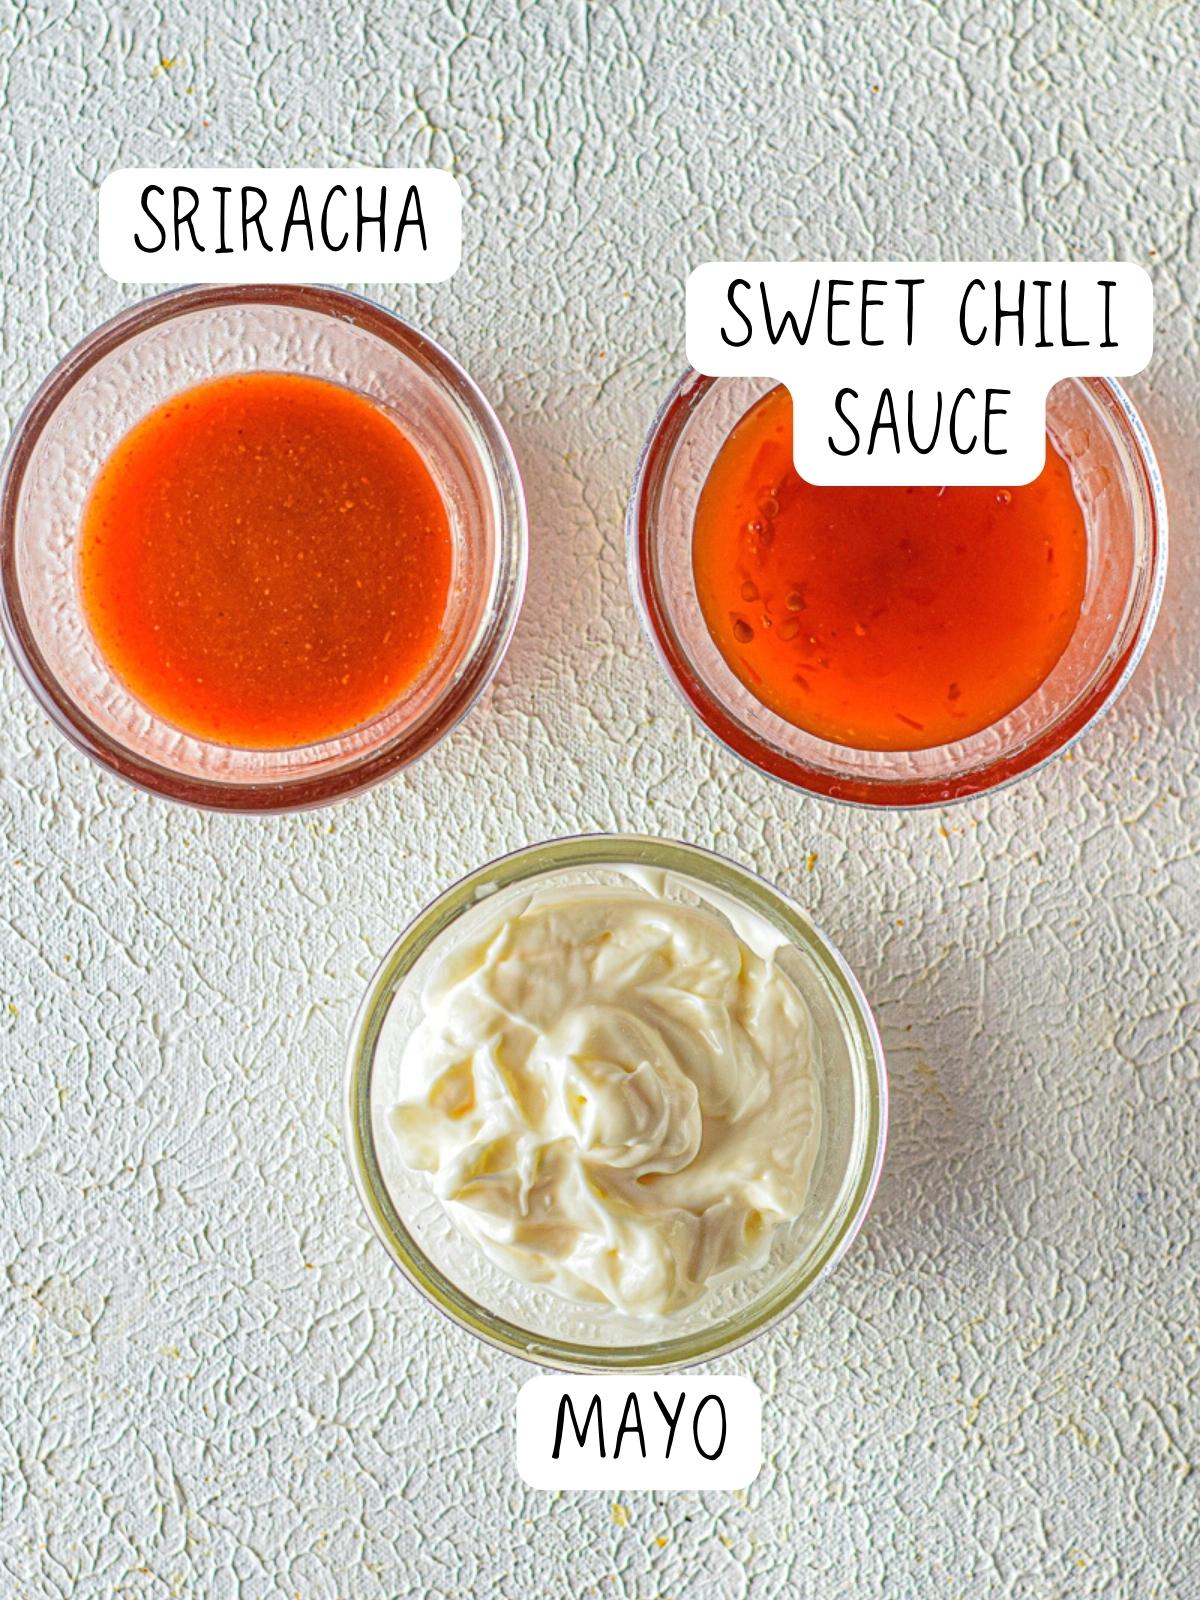 bang bang sauce ingredients, including chili sauce, mayo and sriracha